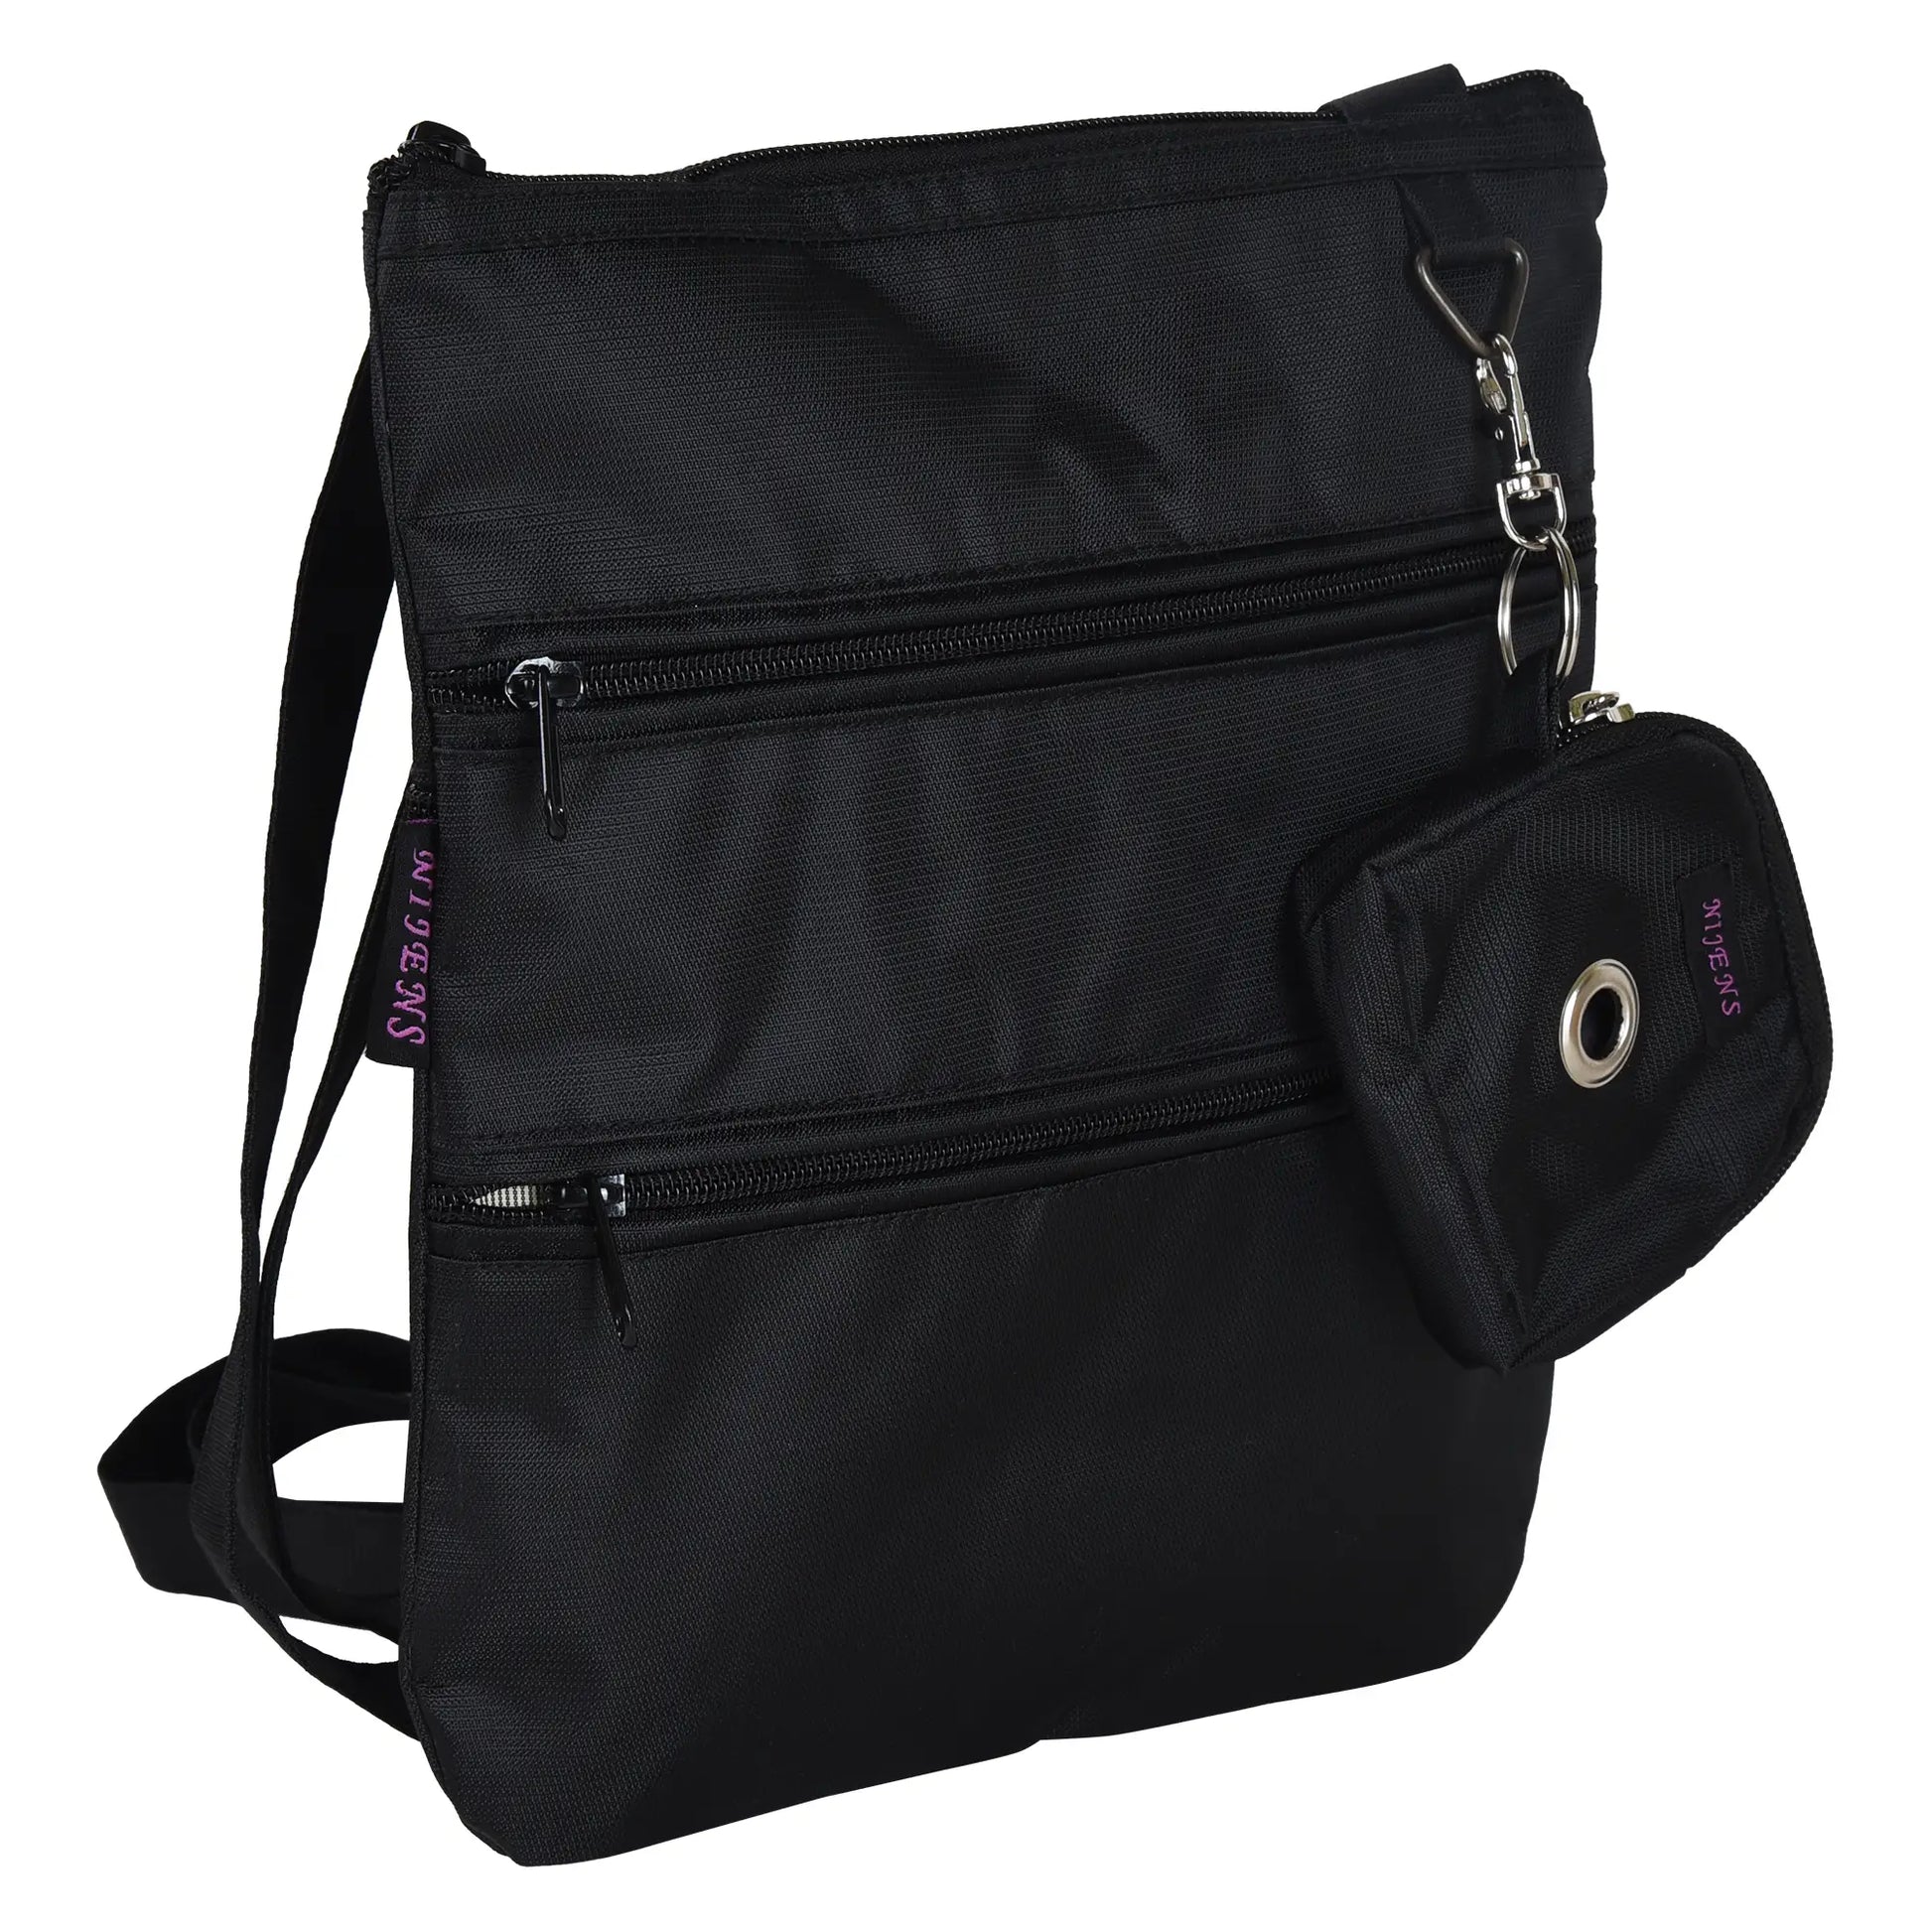 Gassi-Umhängetasche aus wasserabweisenden Stoff schwarz mit 4 Reißverschlusstaschen und einer extra kleinen Beuteltasche für Hundekotbeutel zum Anhängen.